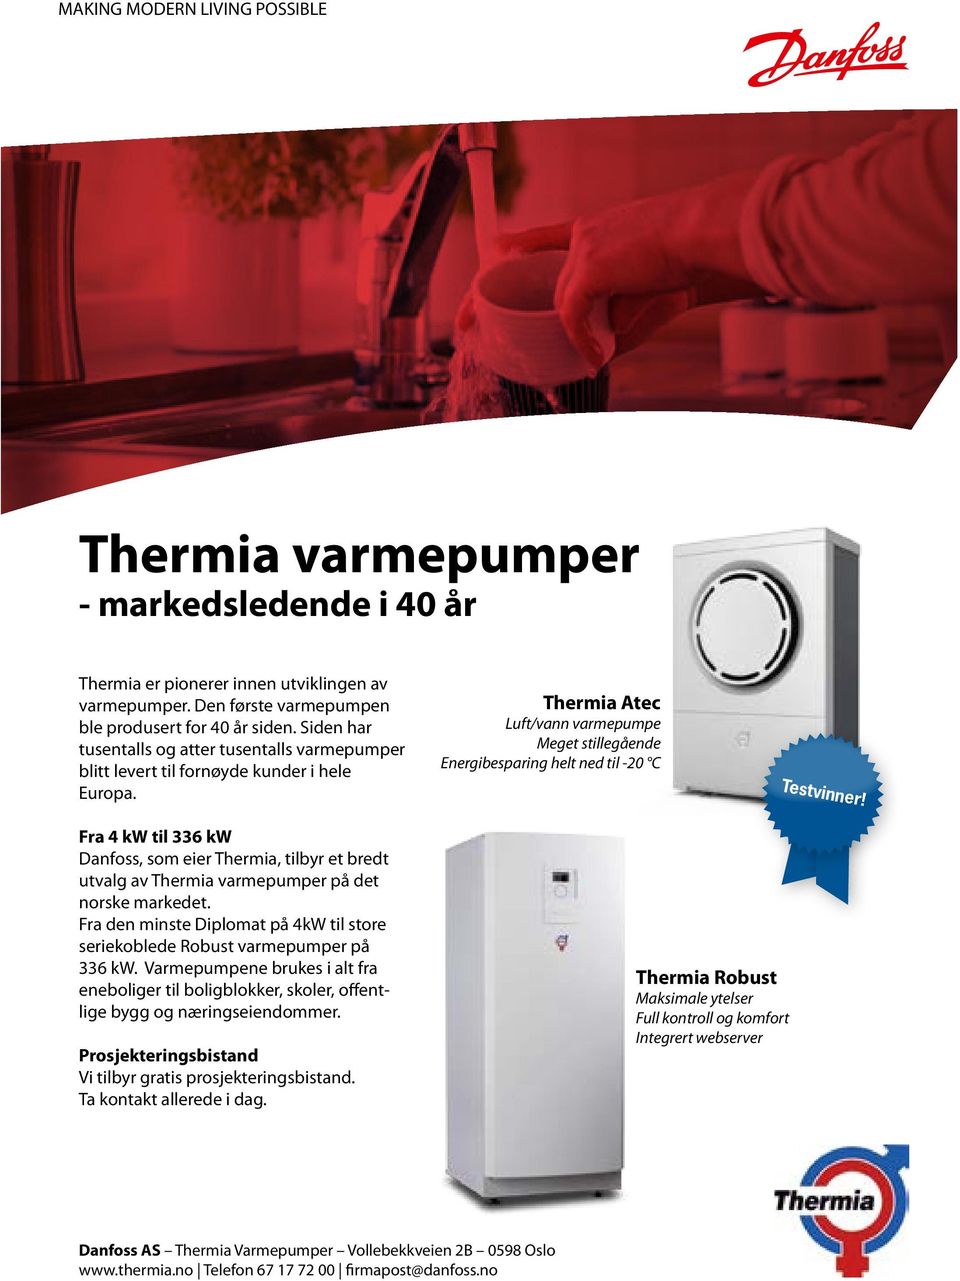 Fra 4 kw til 336 kw Danfoss, som eier Thermia, tilbyr et bredt utvalg av Thermia varmepumper på det norske markedet. Fra den minste Diplomat på 4kW til store seriekoblede Robust varmepumper på 336 kw.